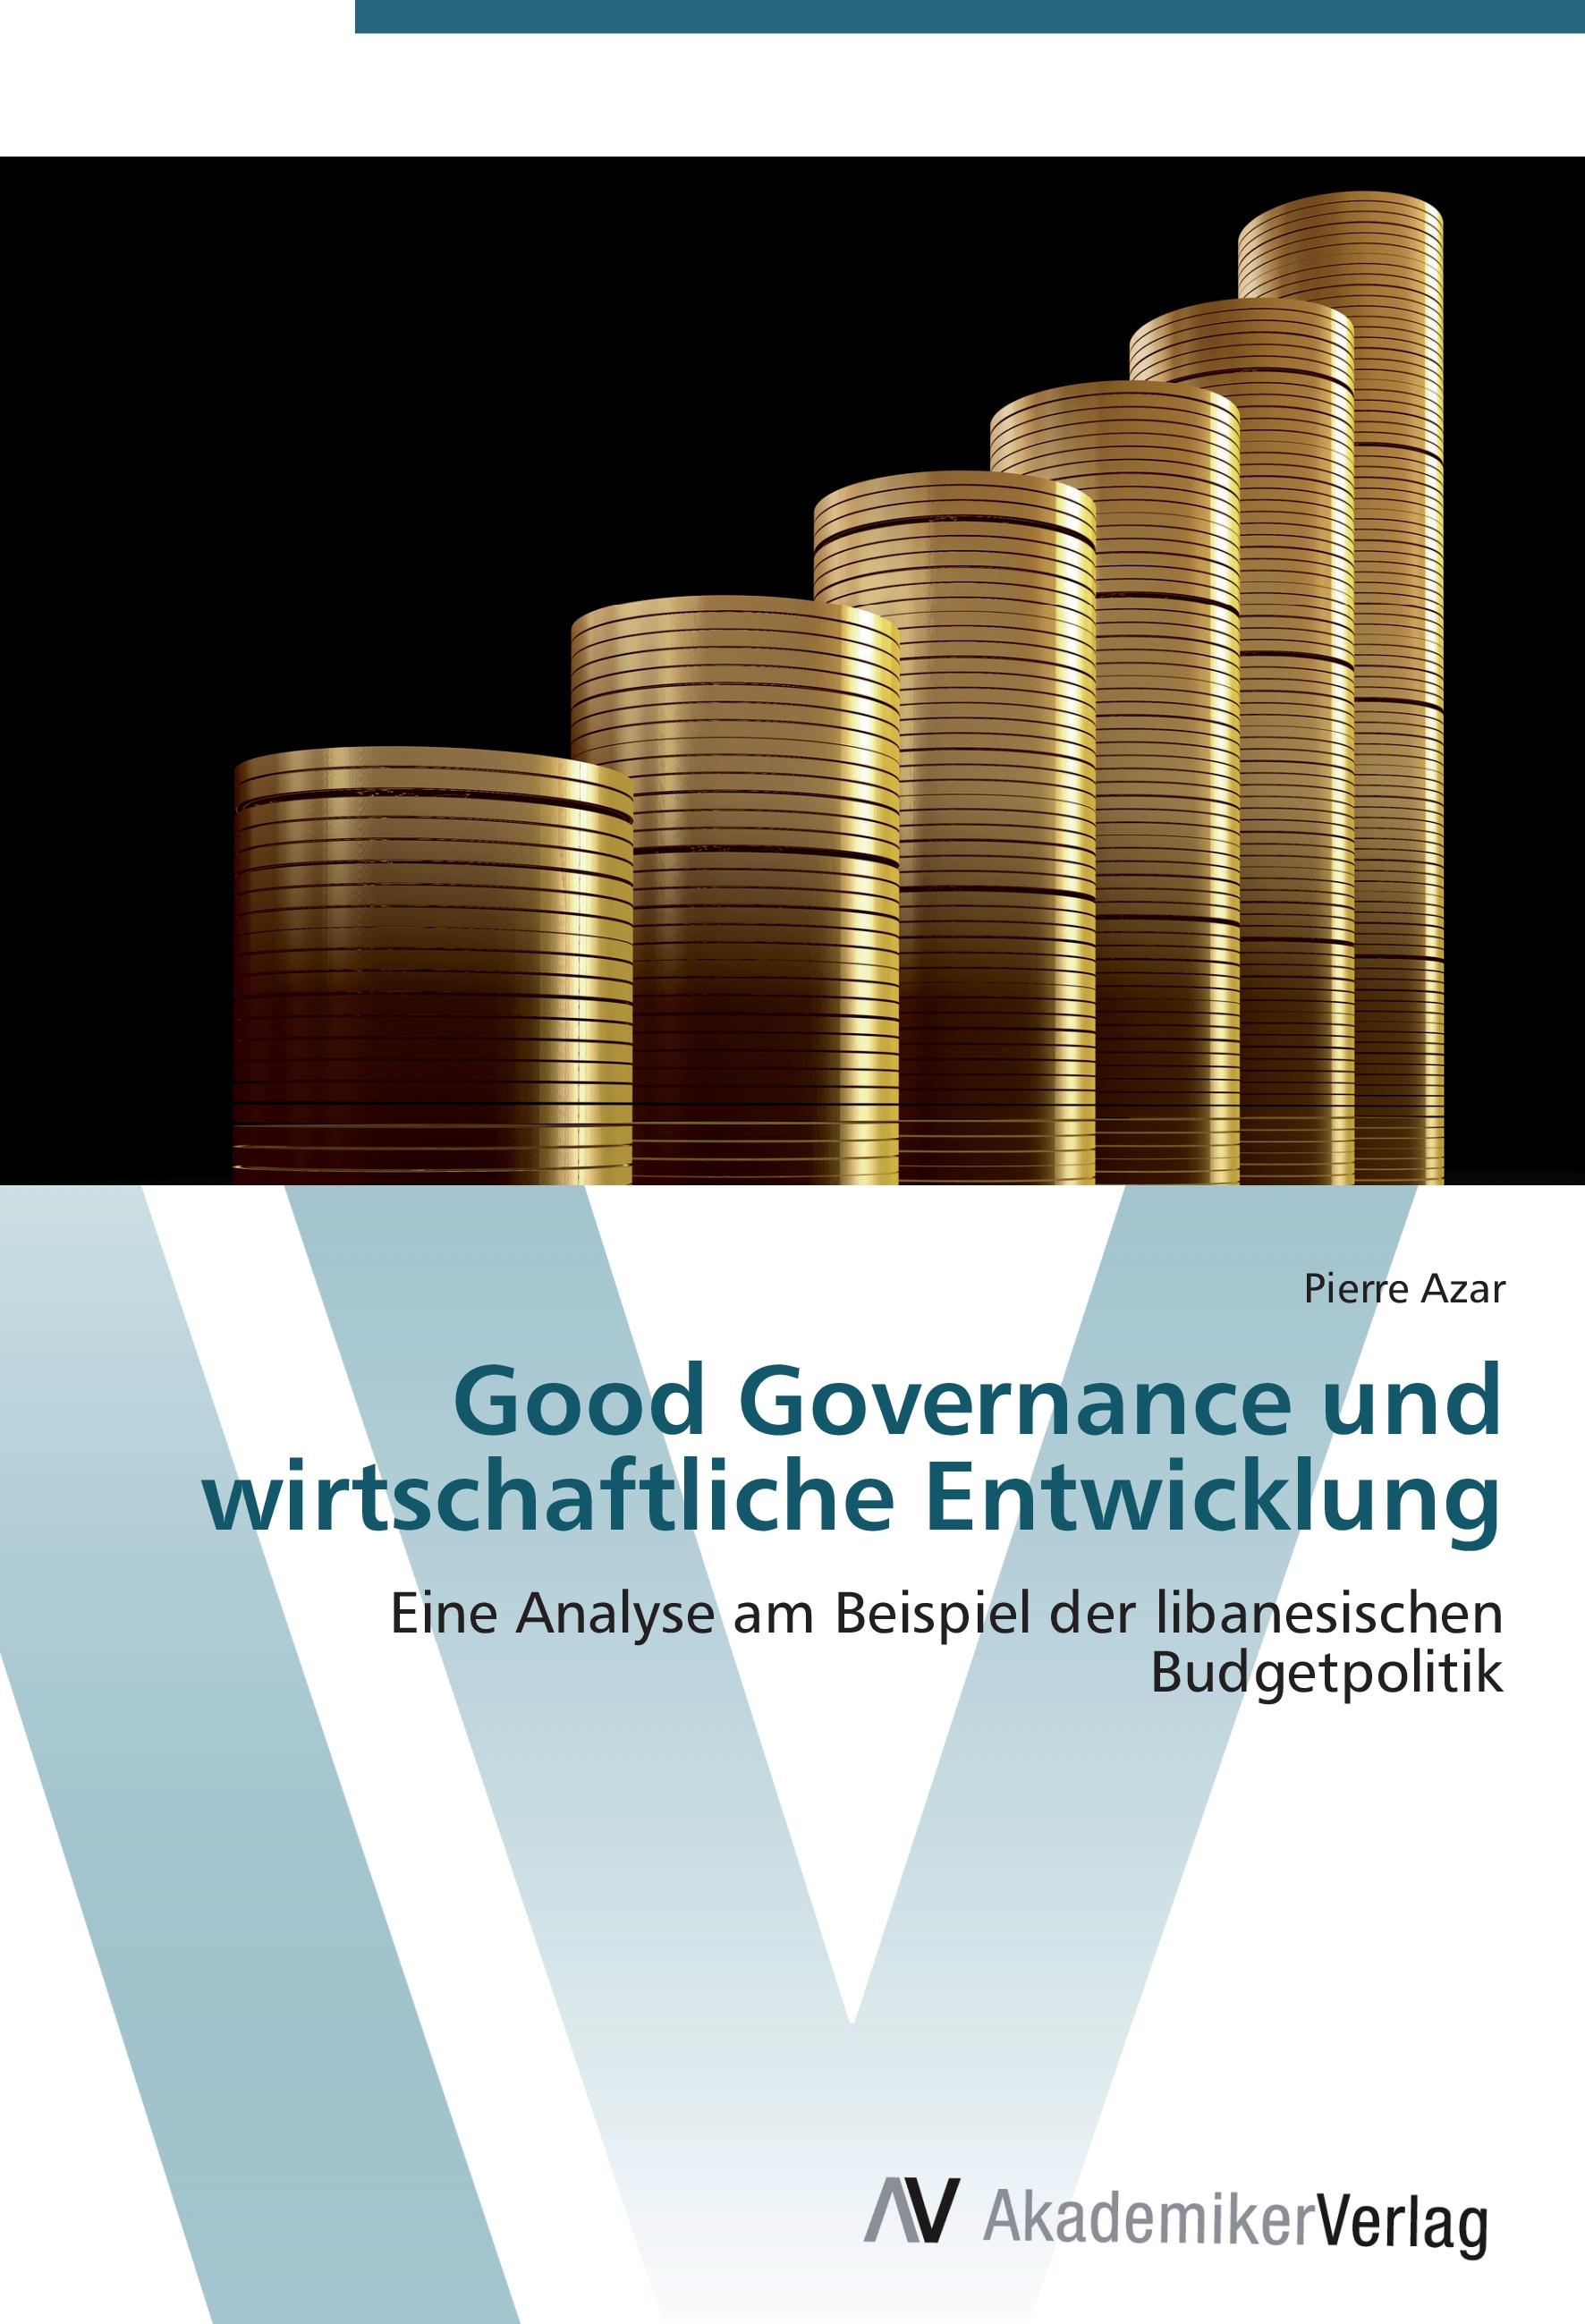 Good Governance und wirtschaftliche Entwicklung - Pierre Azar